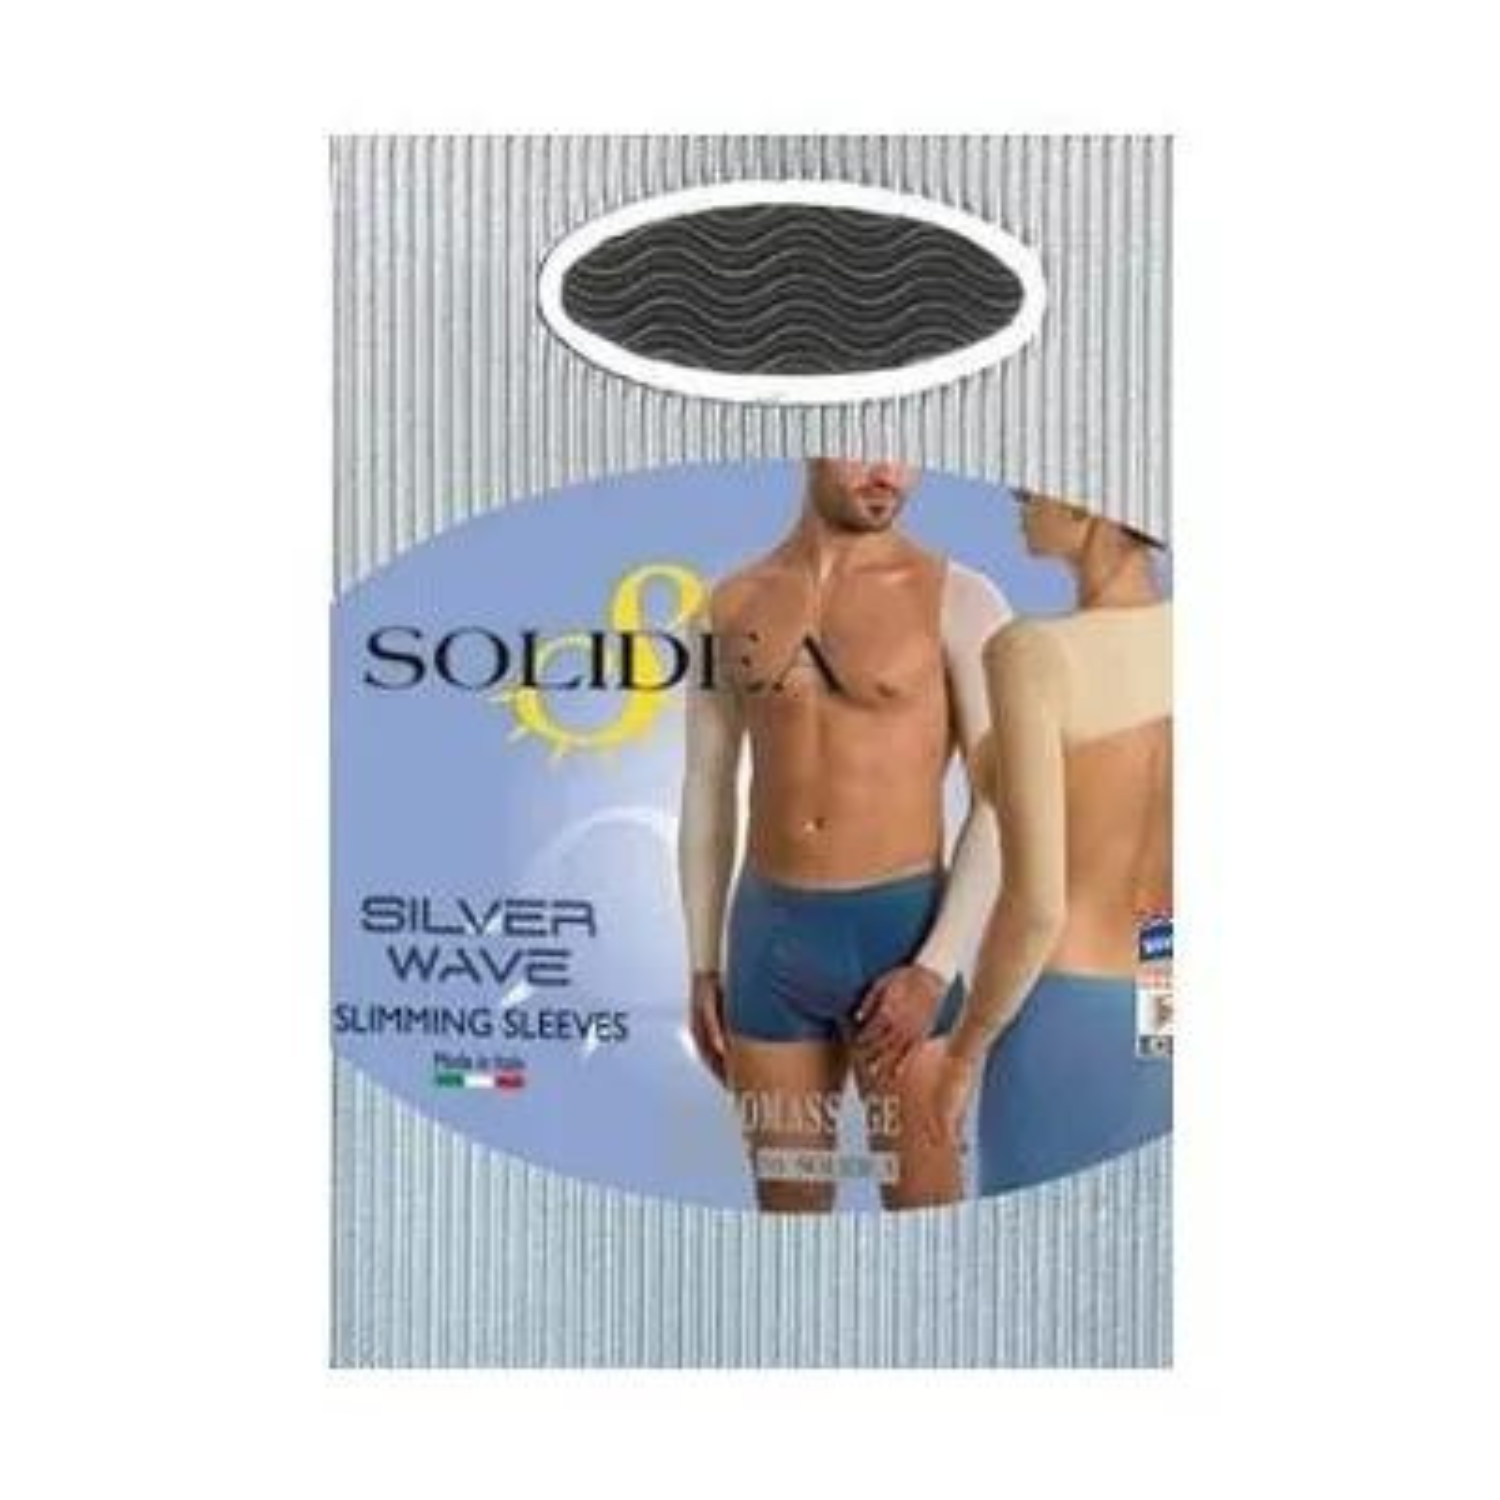 Solidea Silver Wave Slimming Slimming Sleeves 3L שמפניה